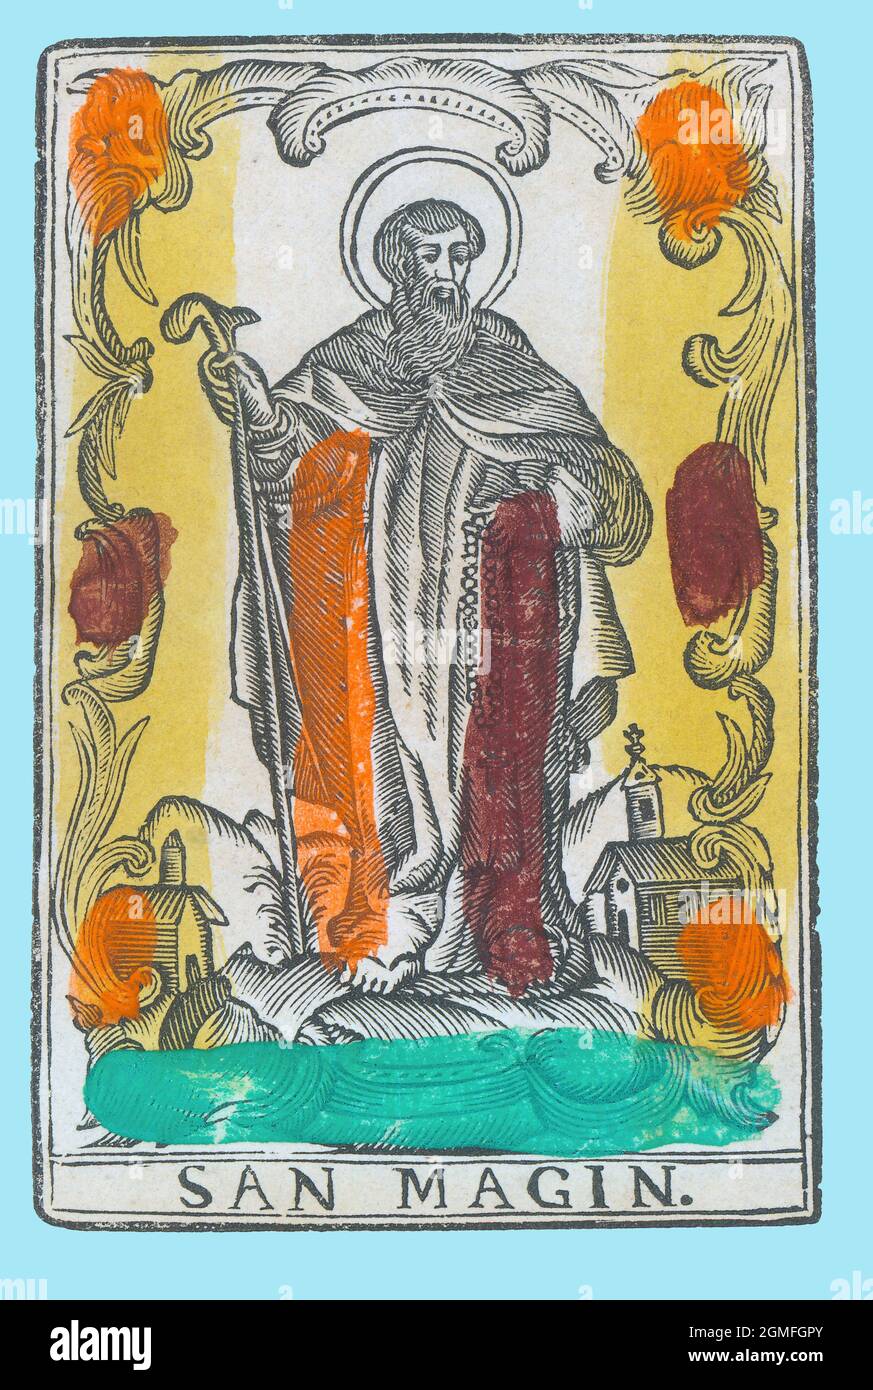 San Magín (siglo III-306), ermitaño martirizado por los romanos. Estampería popular del siglo XVIII, pintado a mano. Stock Photo